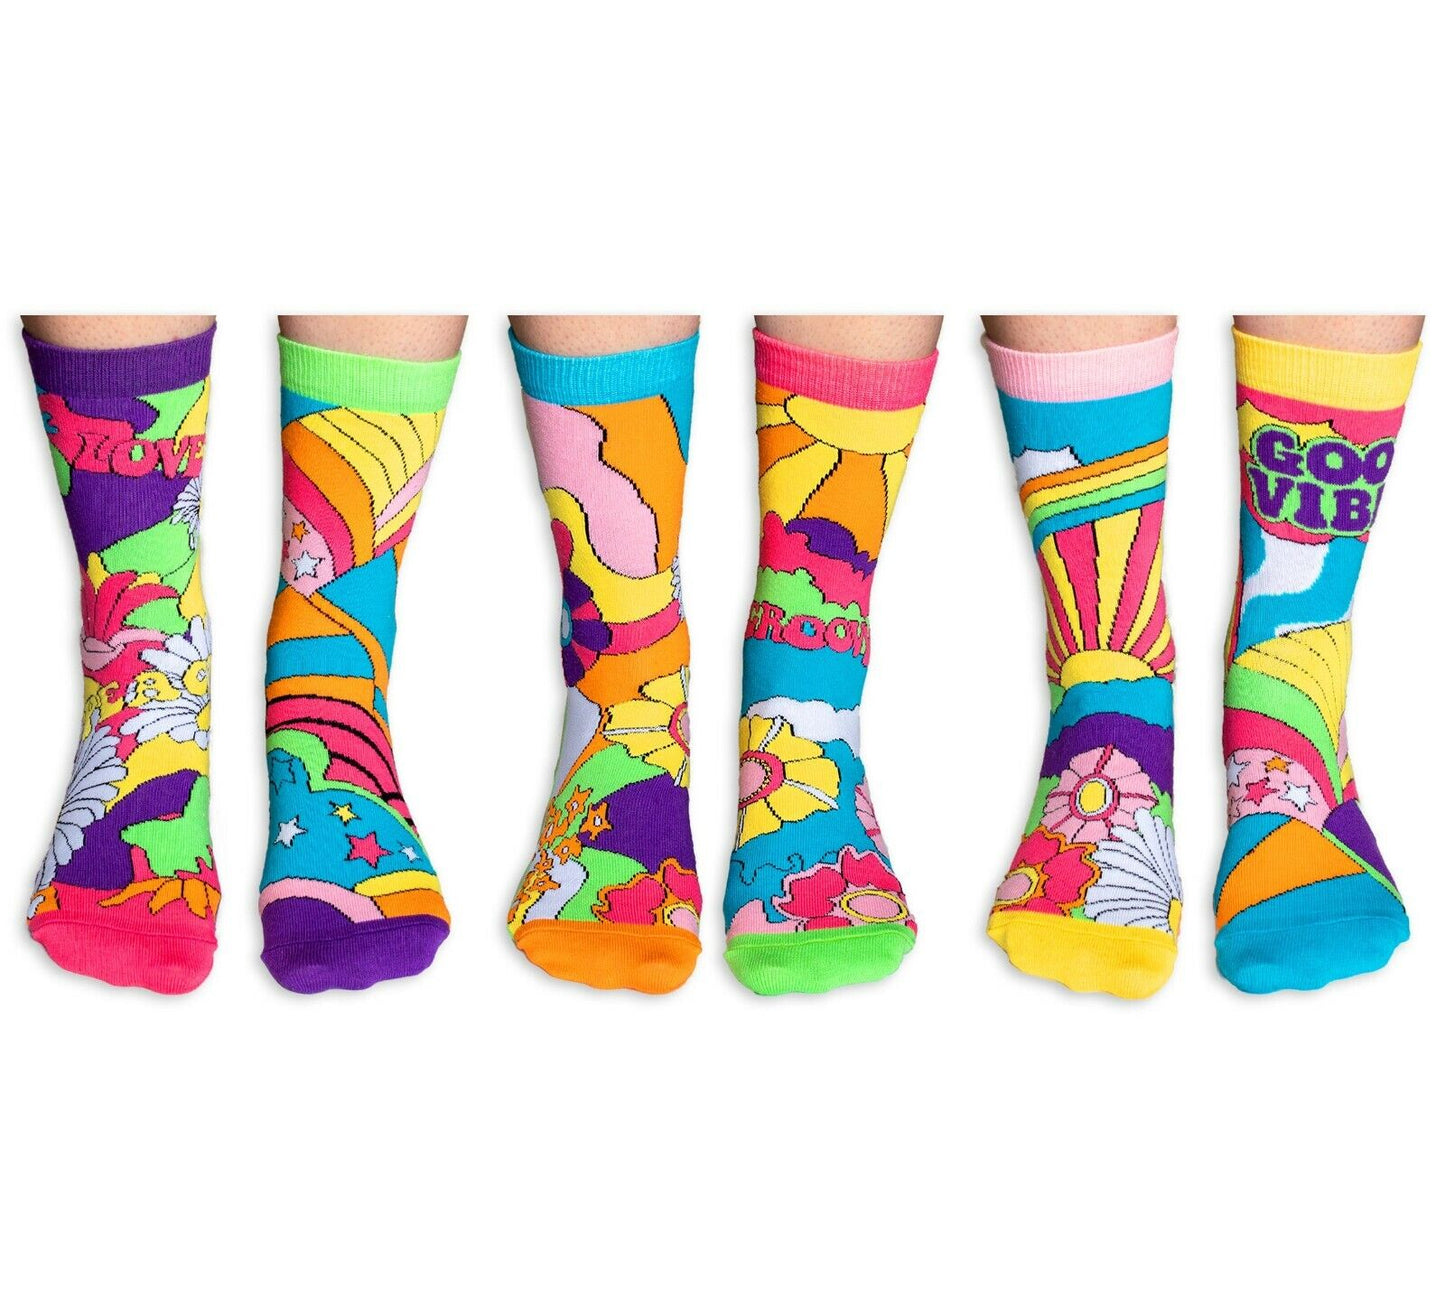 United Oddsocks  Hippy Go Lucky 6 Odd Socks Gift Box-Ladies Size 4-8